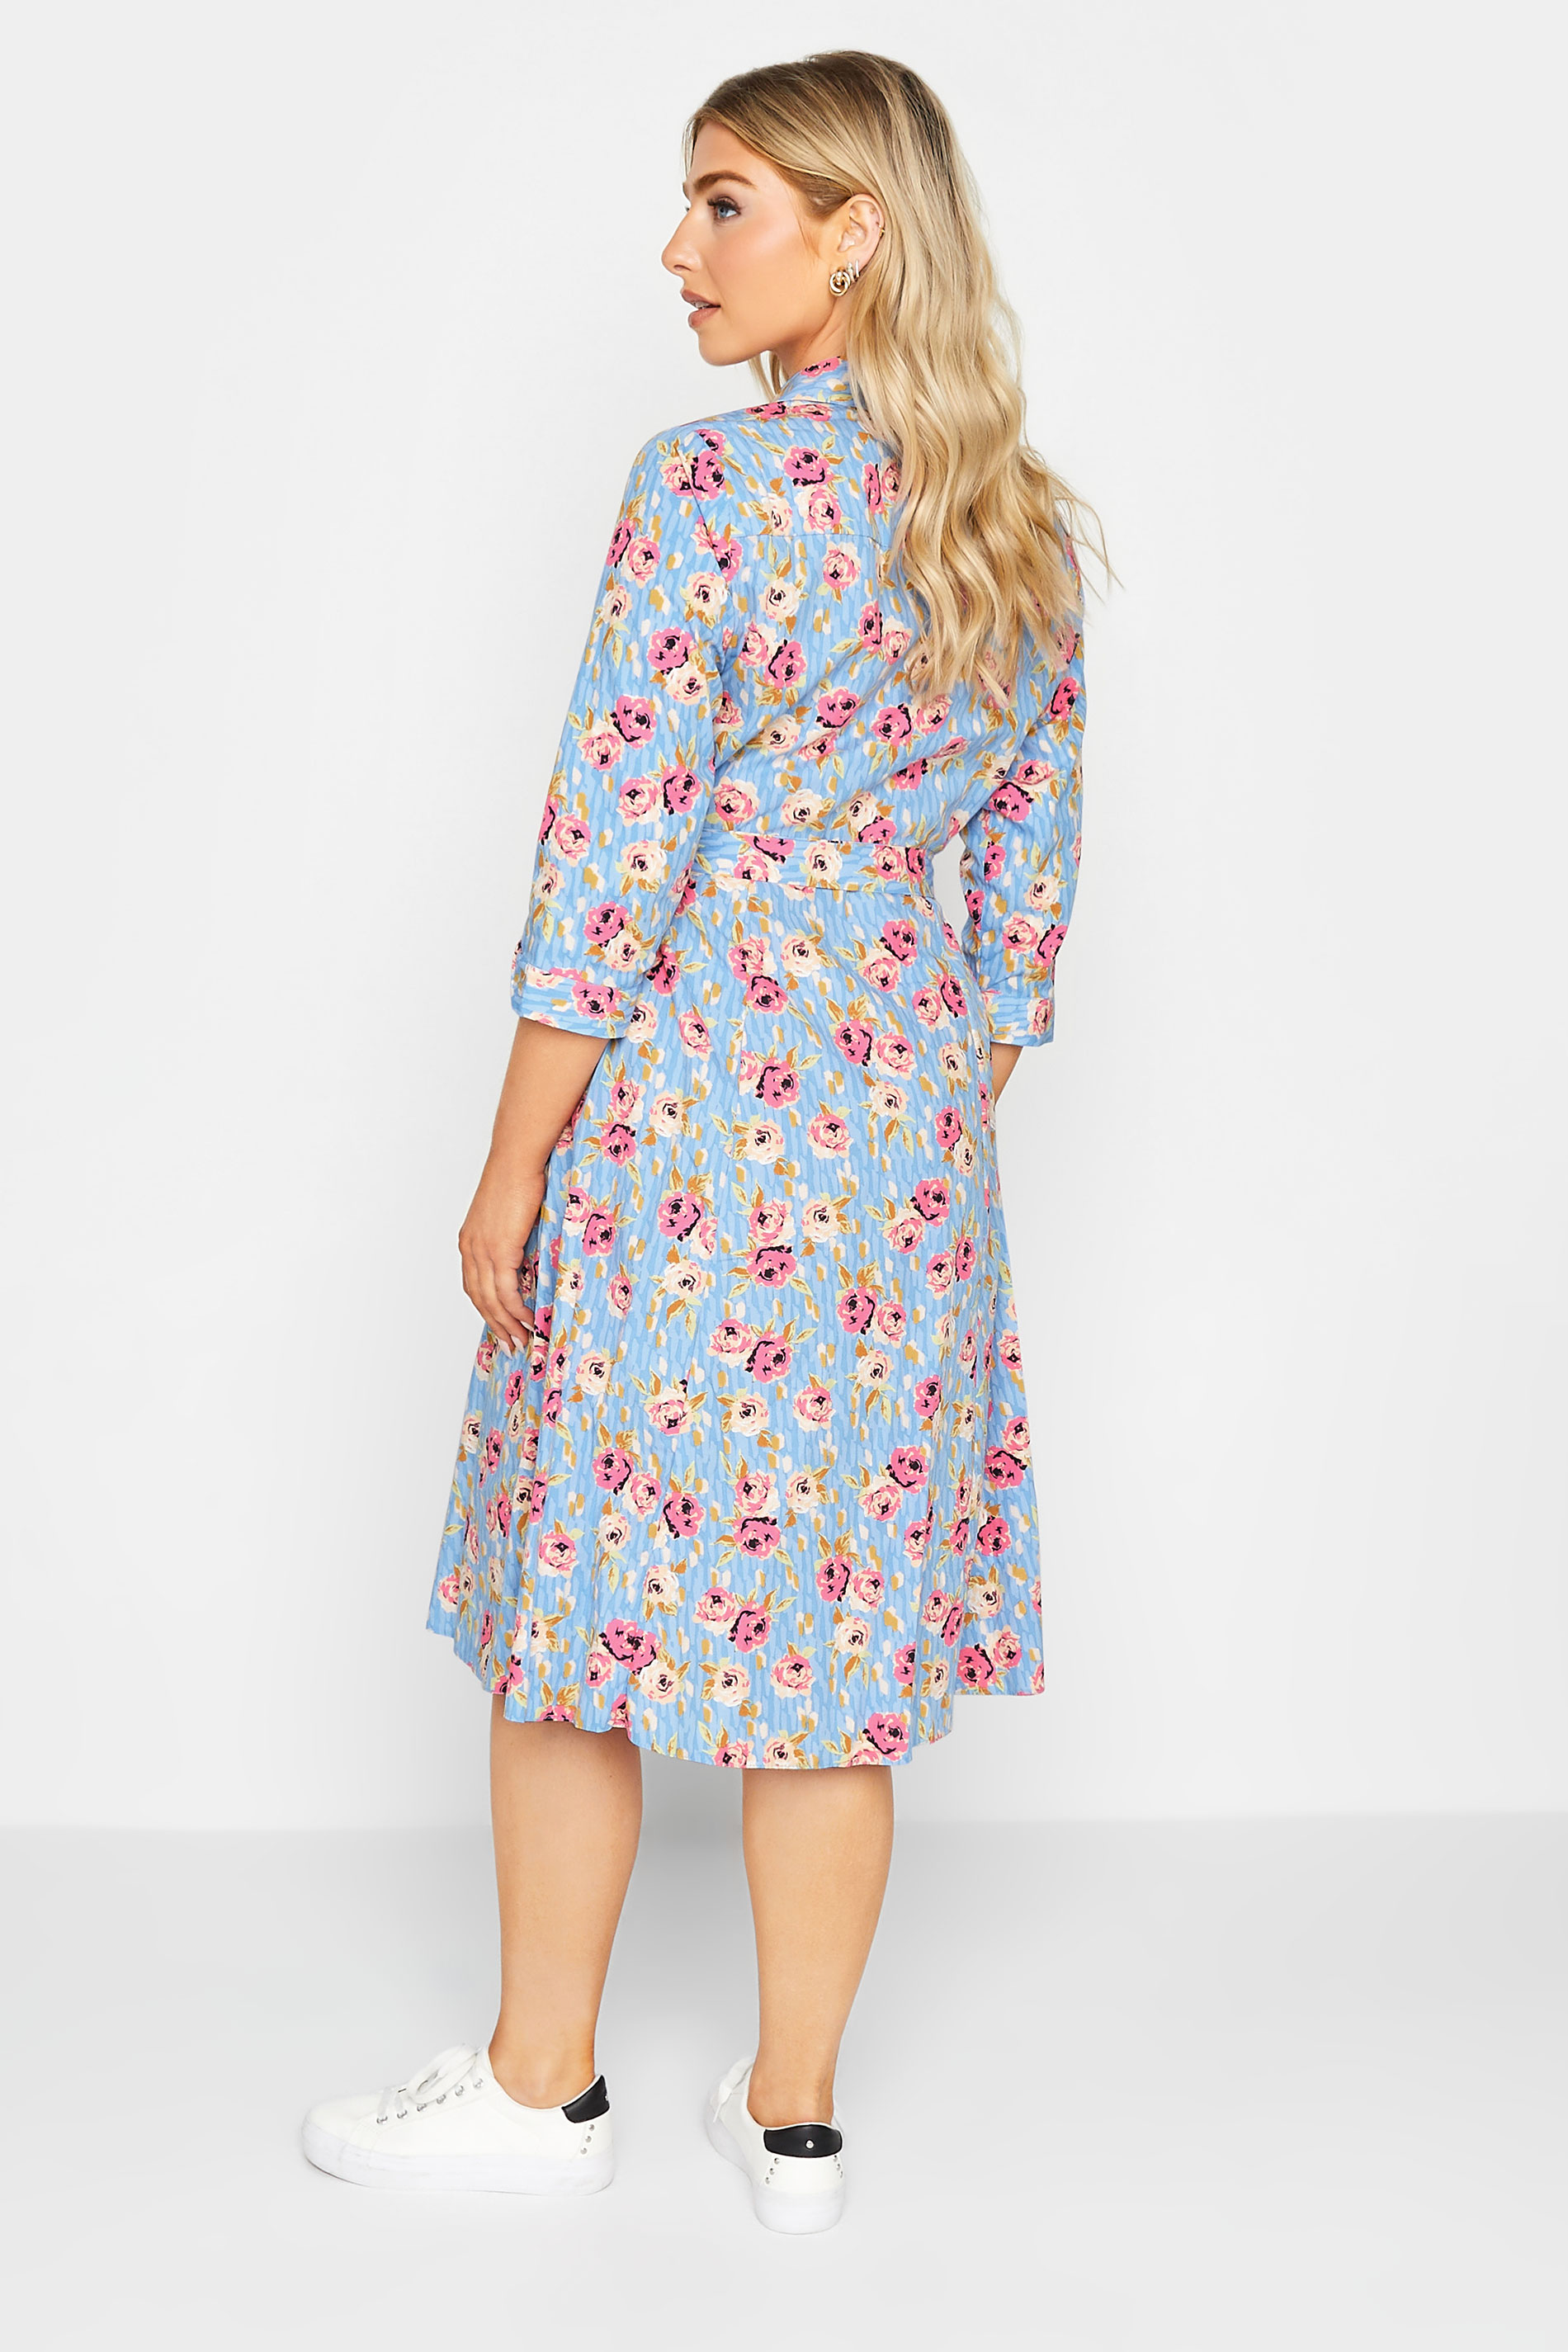 M&Co Blue Floral Print Tie Waist Shirt Dress | M&Co 3